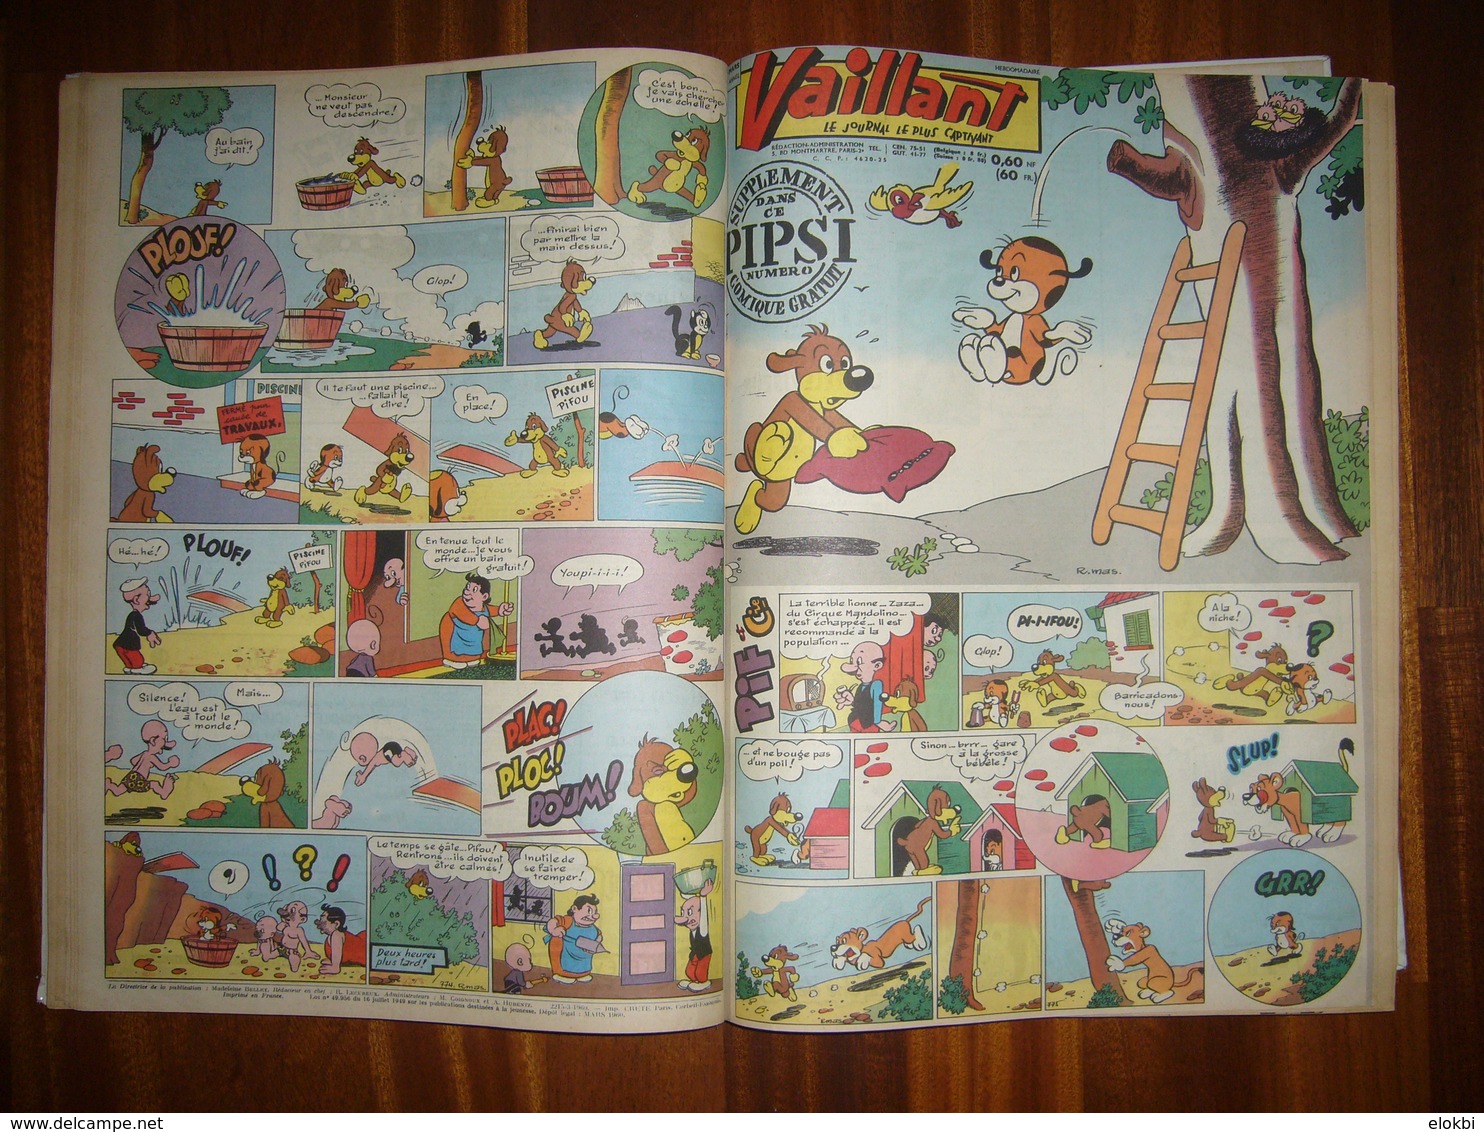 Album Vaillant n°2 [Série n°3] Revues n°772 à 884 incluses de l'année 1960 -Voir description détaillée